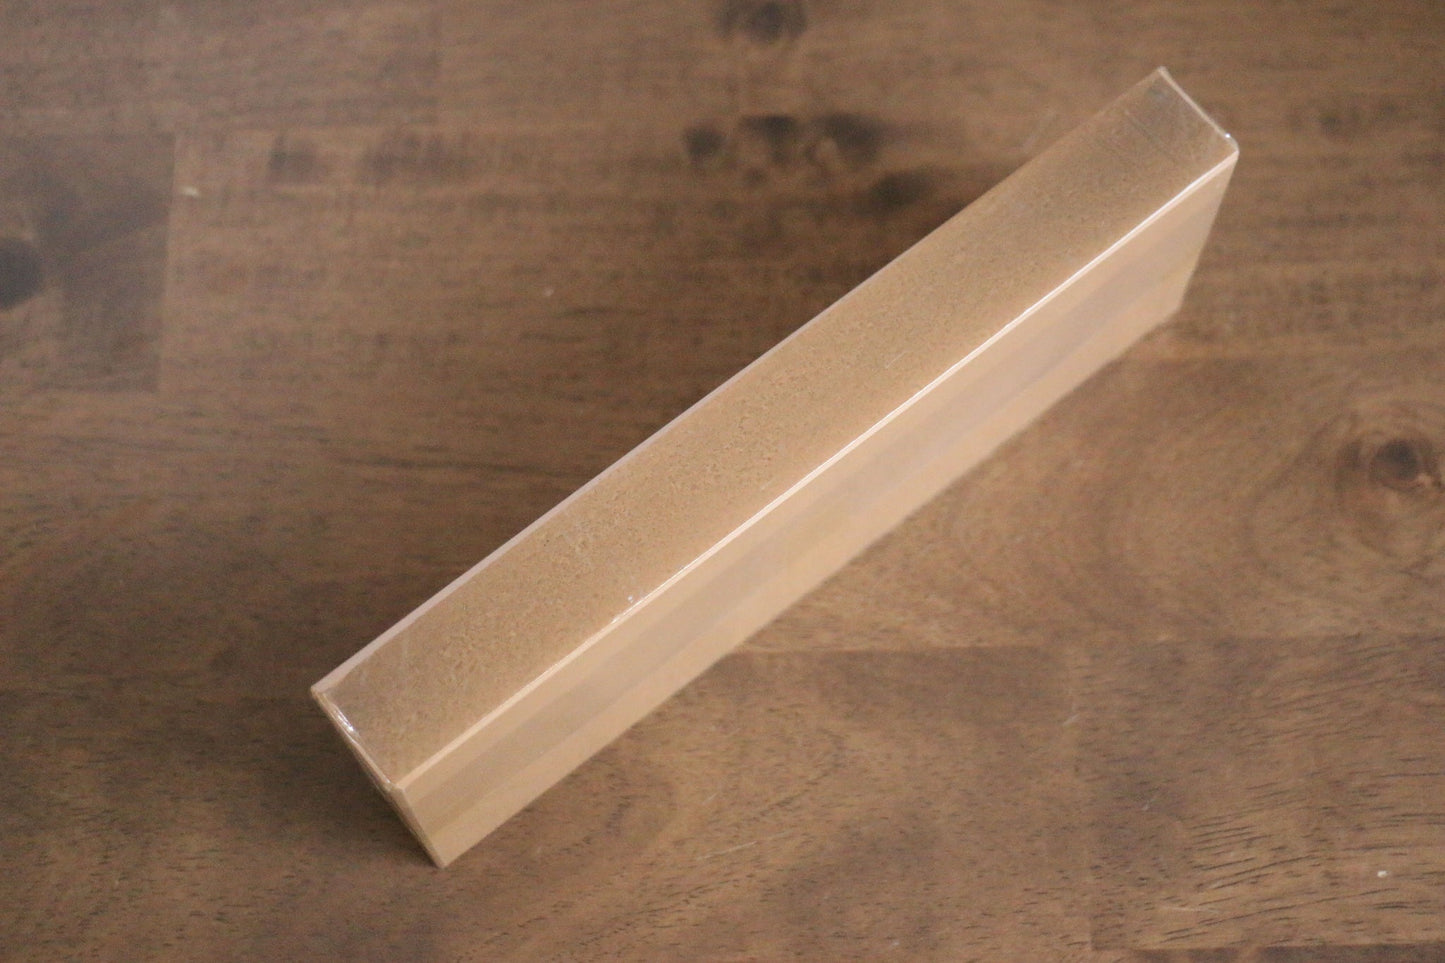 Feiner Schleifstein der Marke Jikko Ceramic mit Körnung Nr. 6000 – Specialized Messer-Schleifstein, Gewicht 690 Gramm